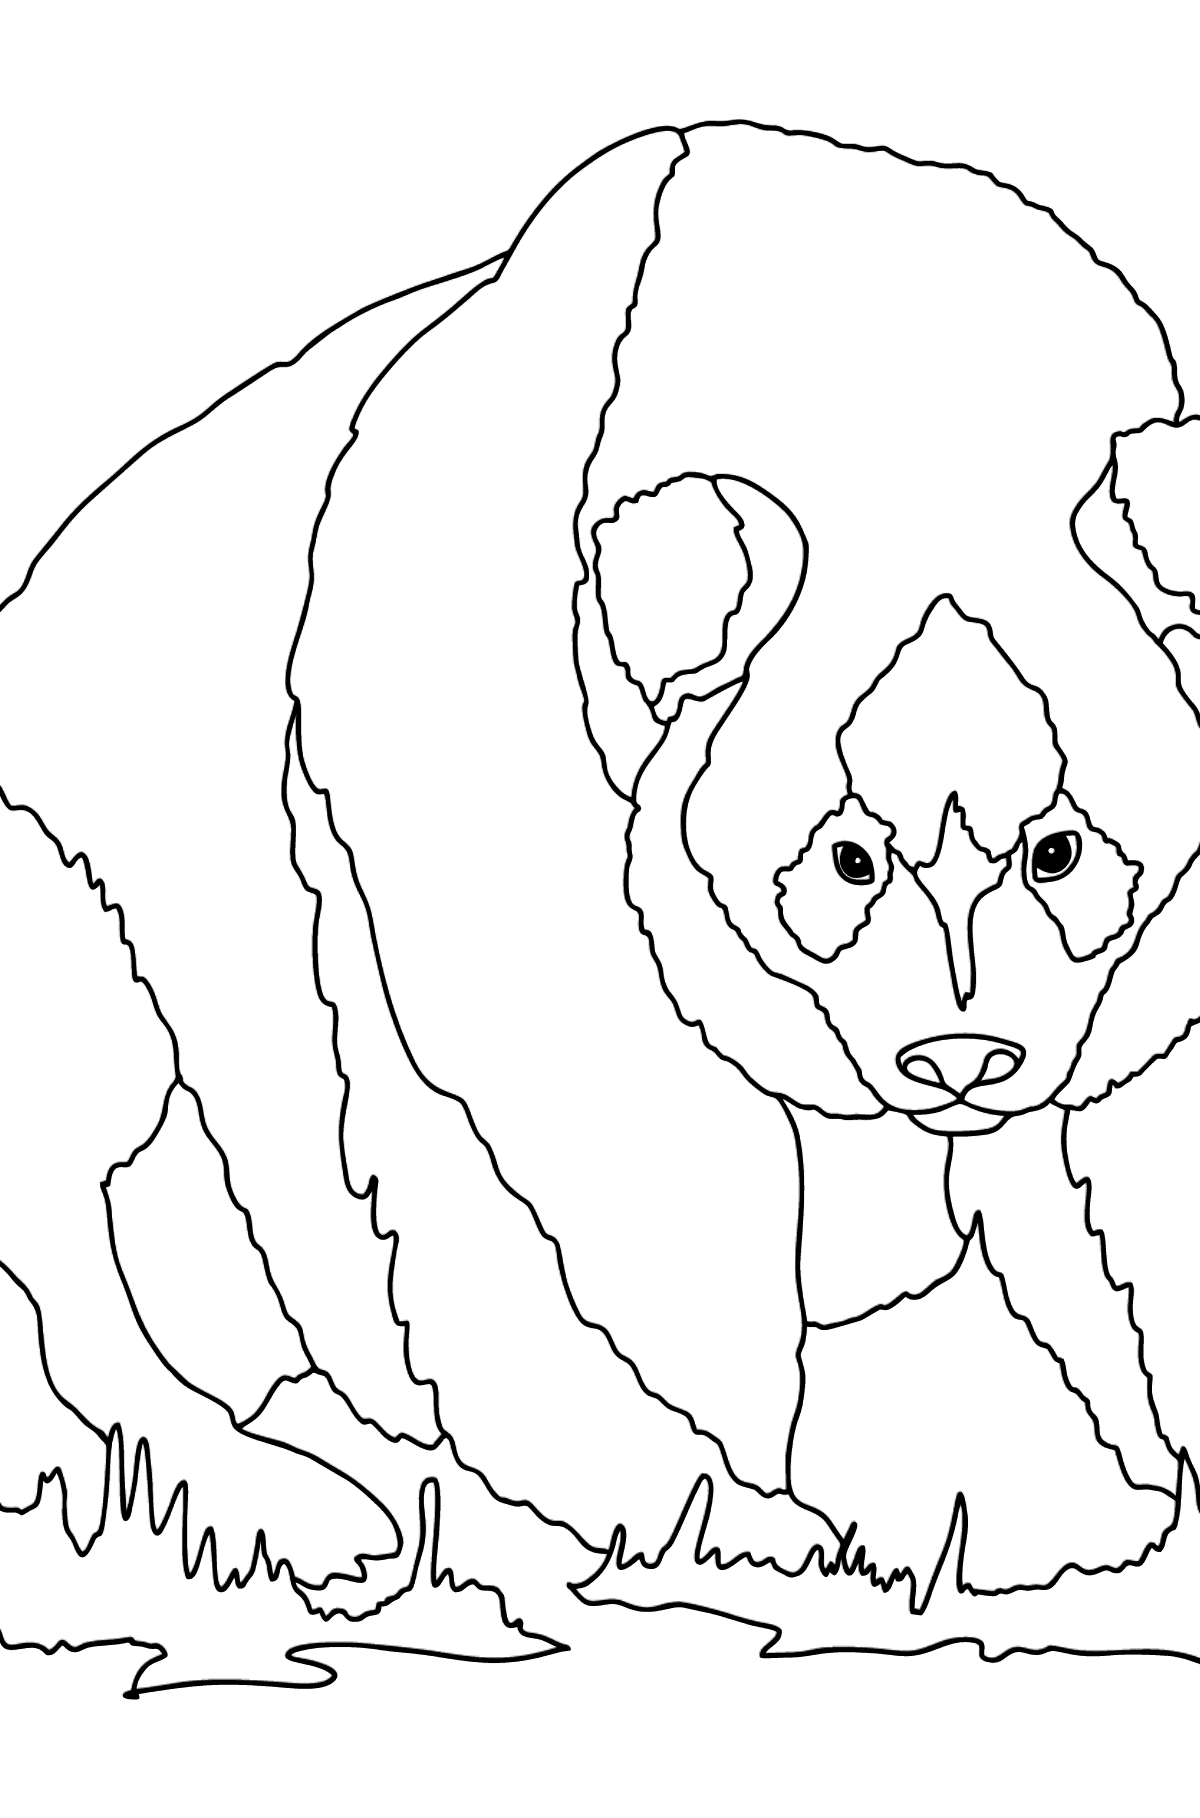 Coloriage - Un panda en chasse - Coloriages pour les Enfants